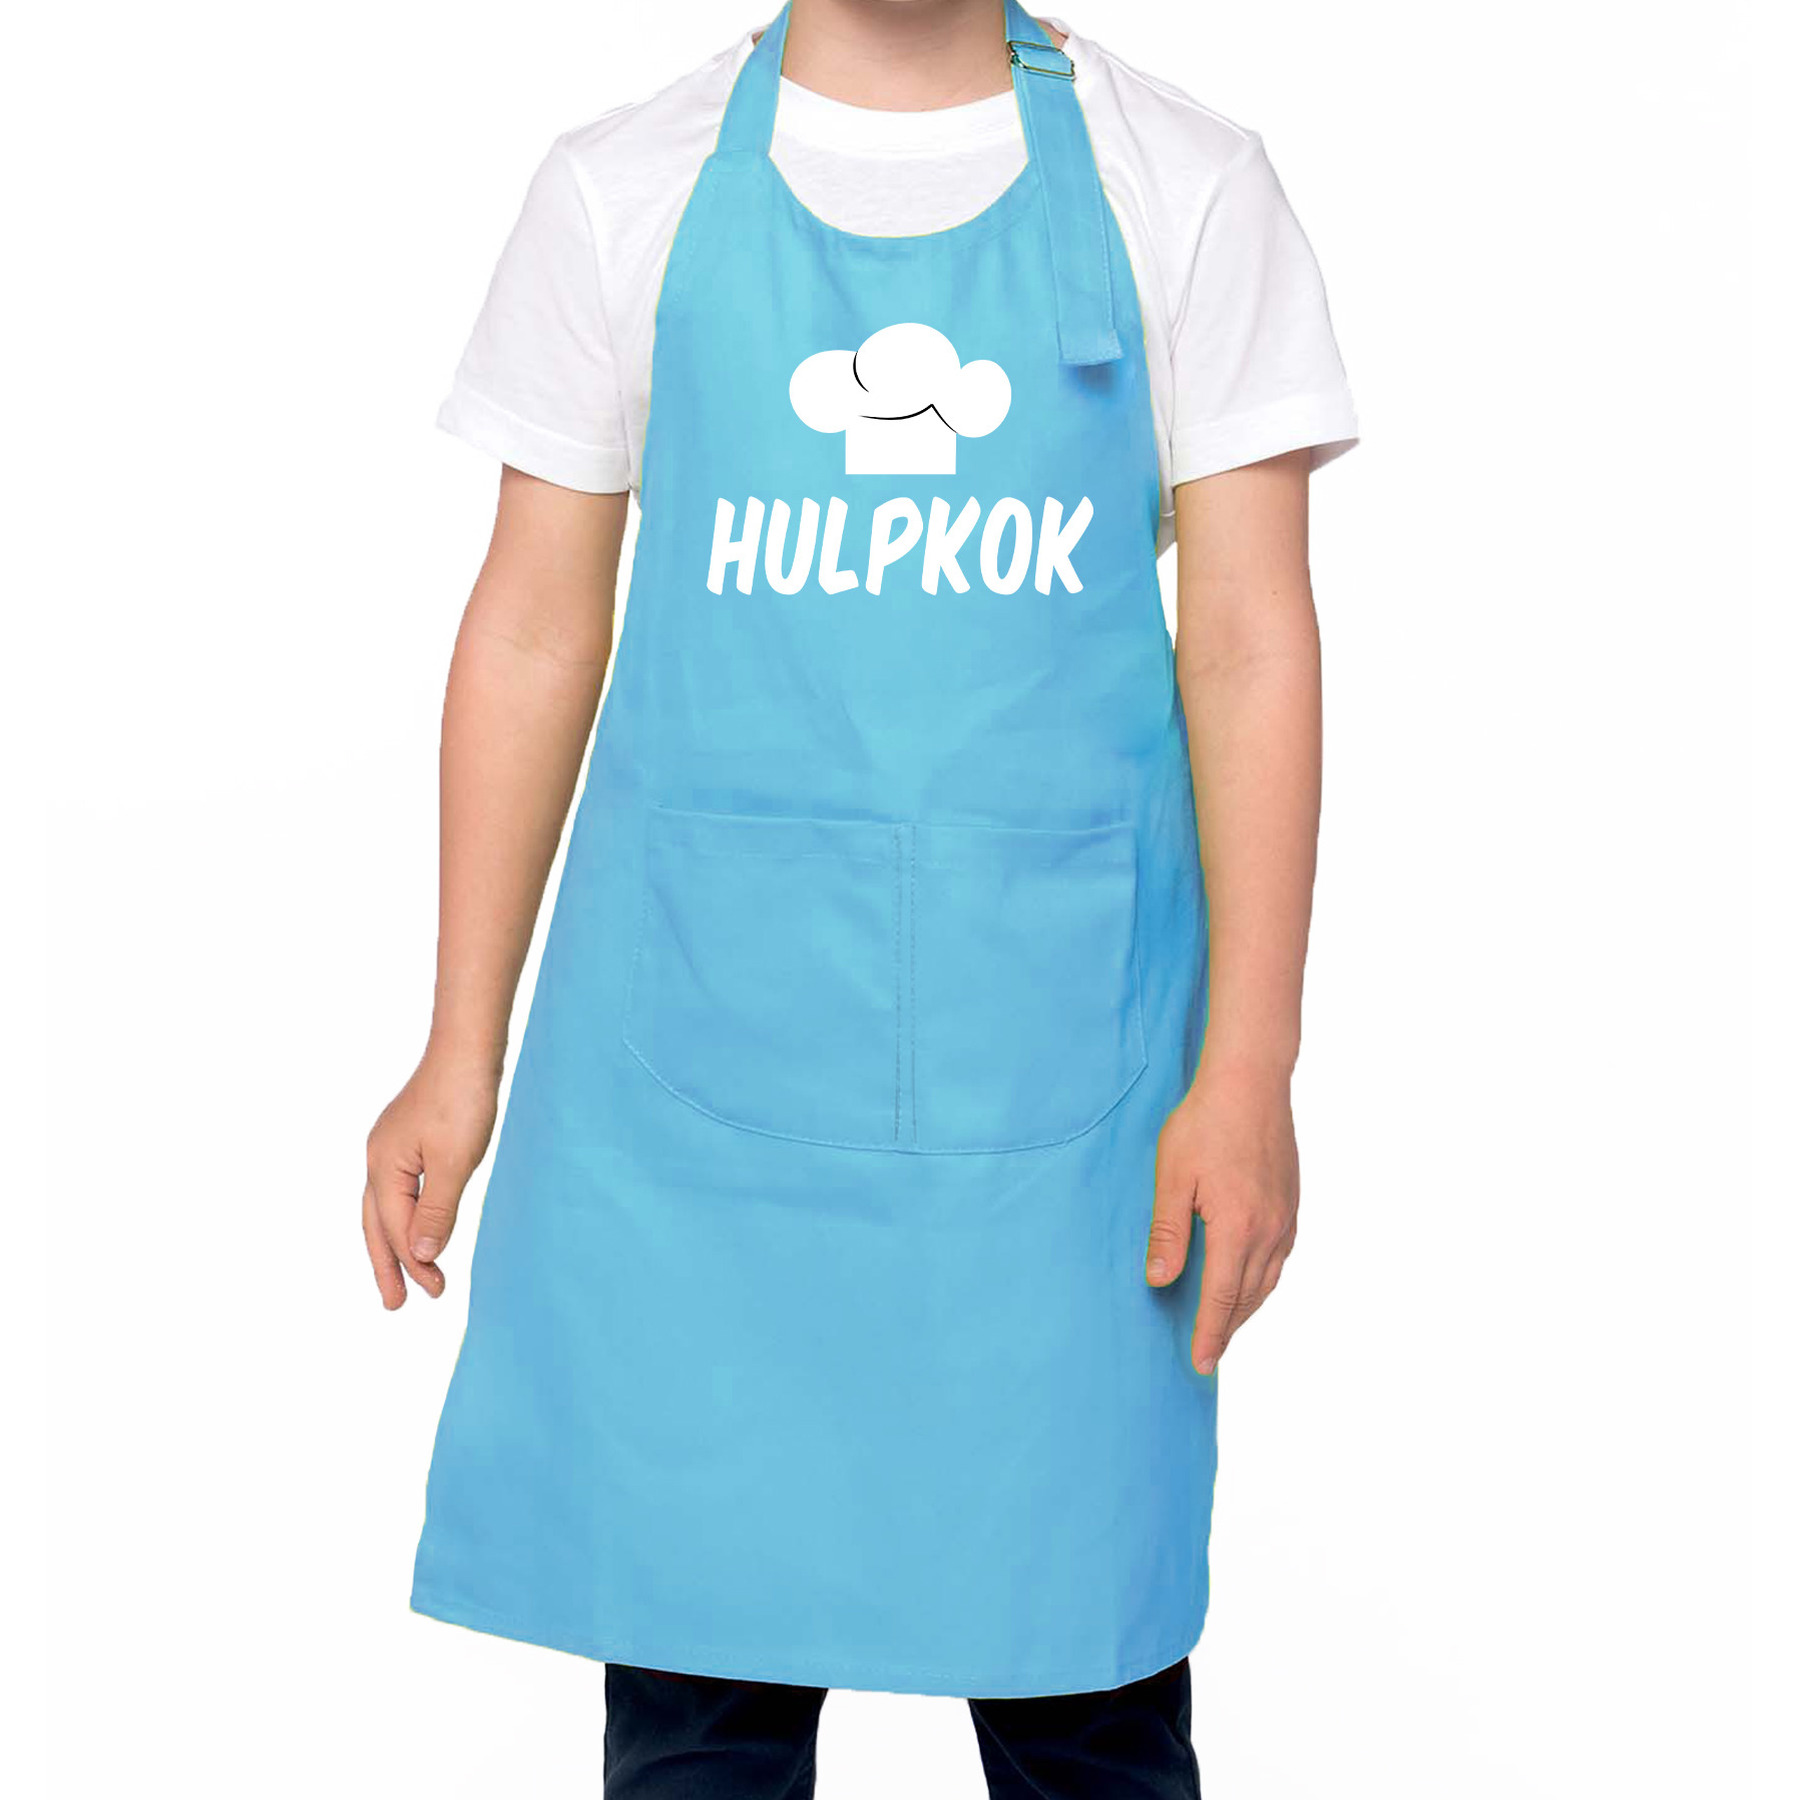 Hulpkok Keukenschort kinderen/ kinder schort blauw voor jongens en meisjes One size -